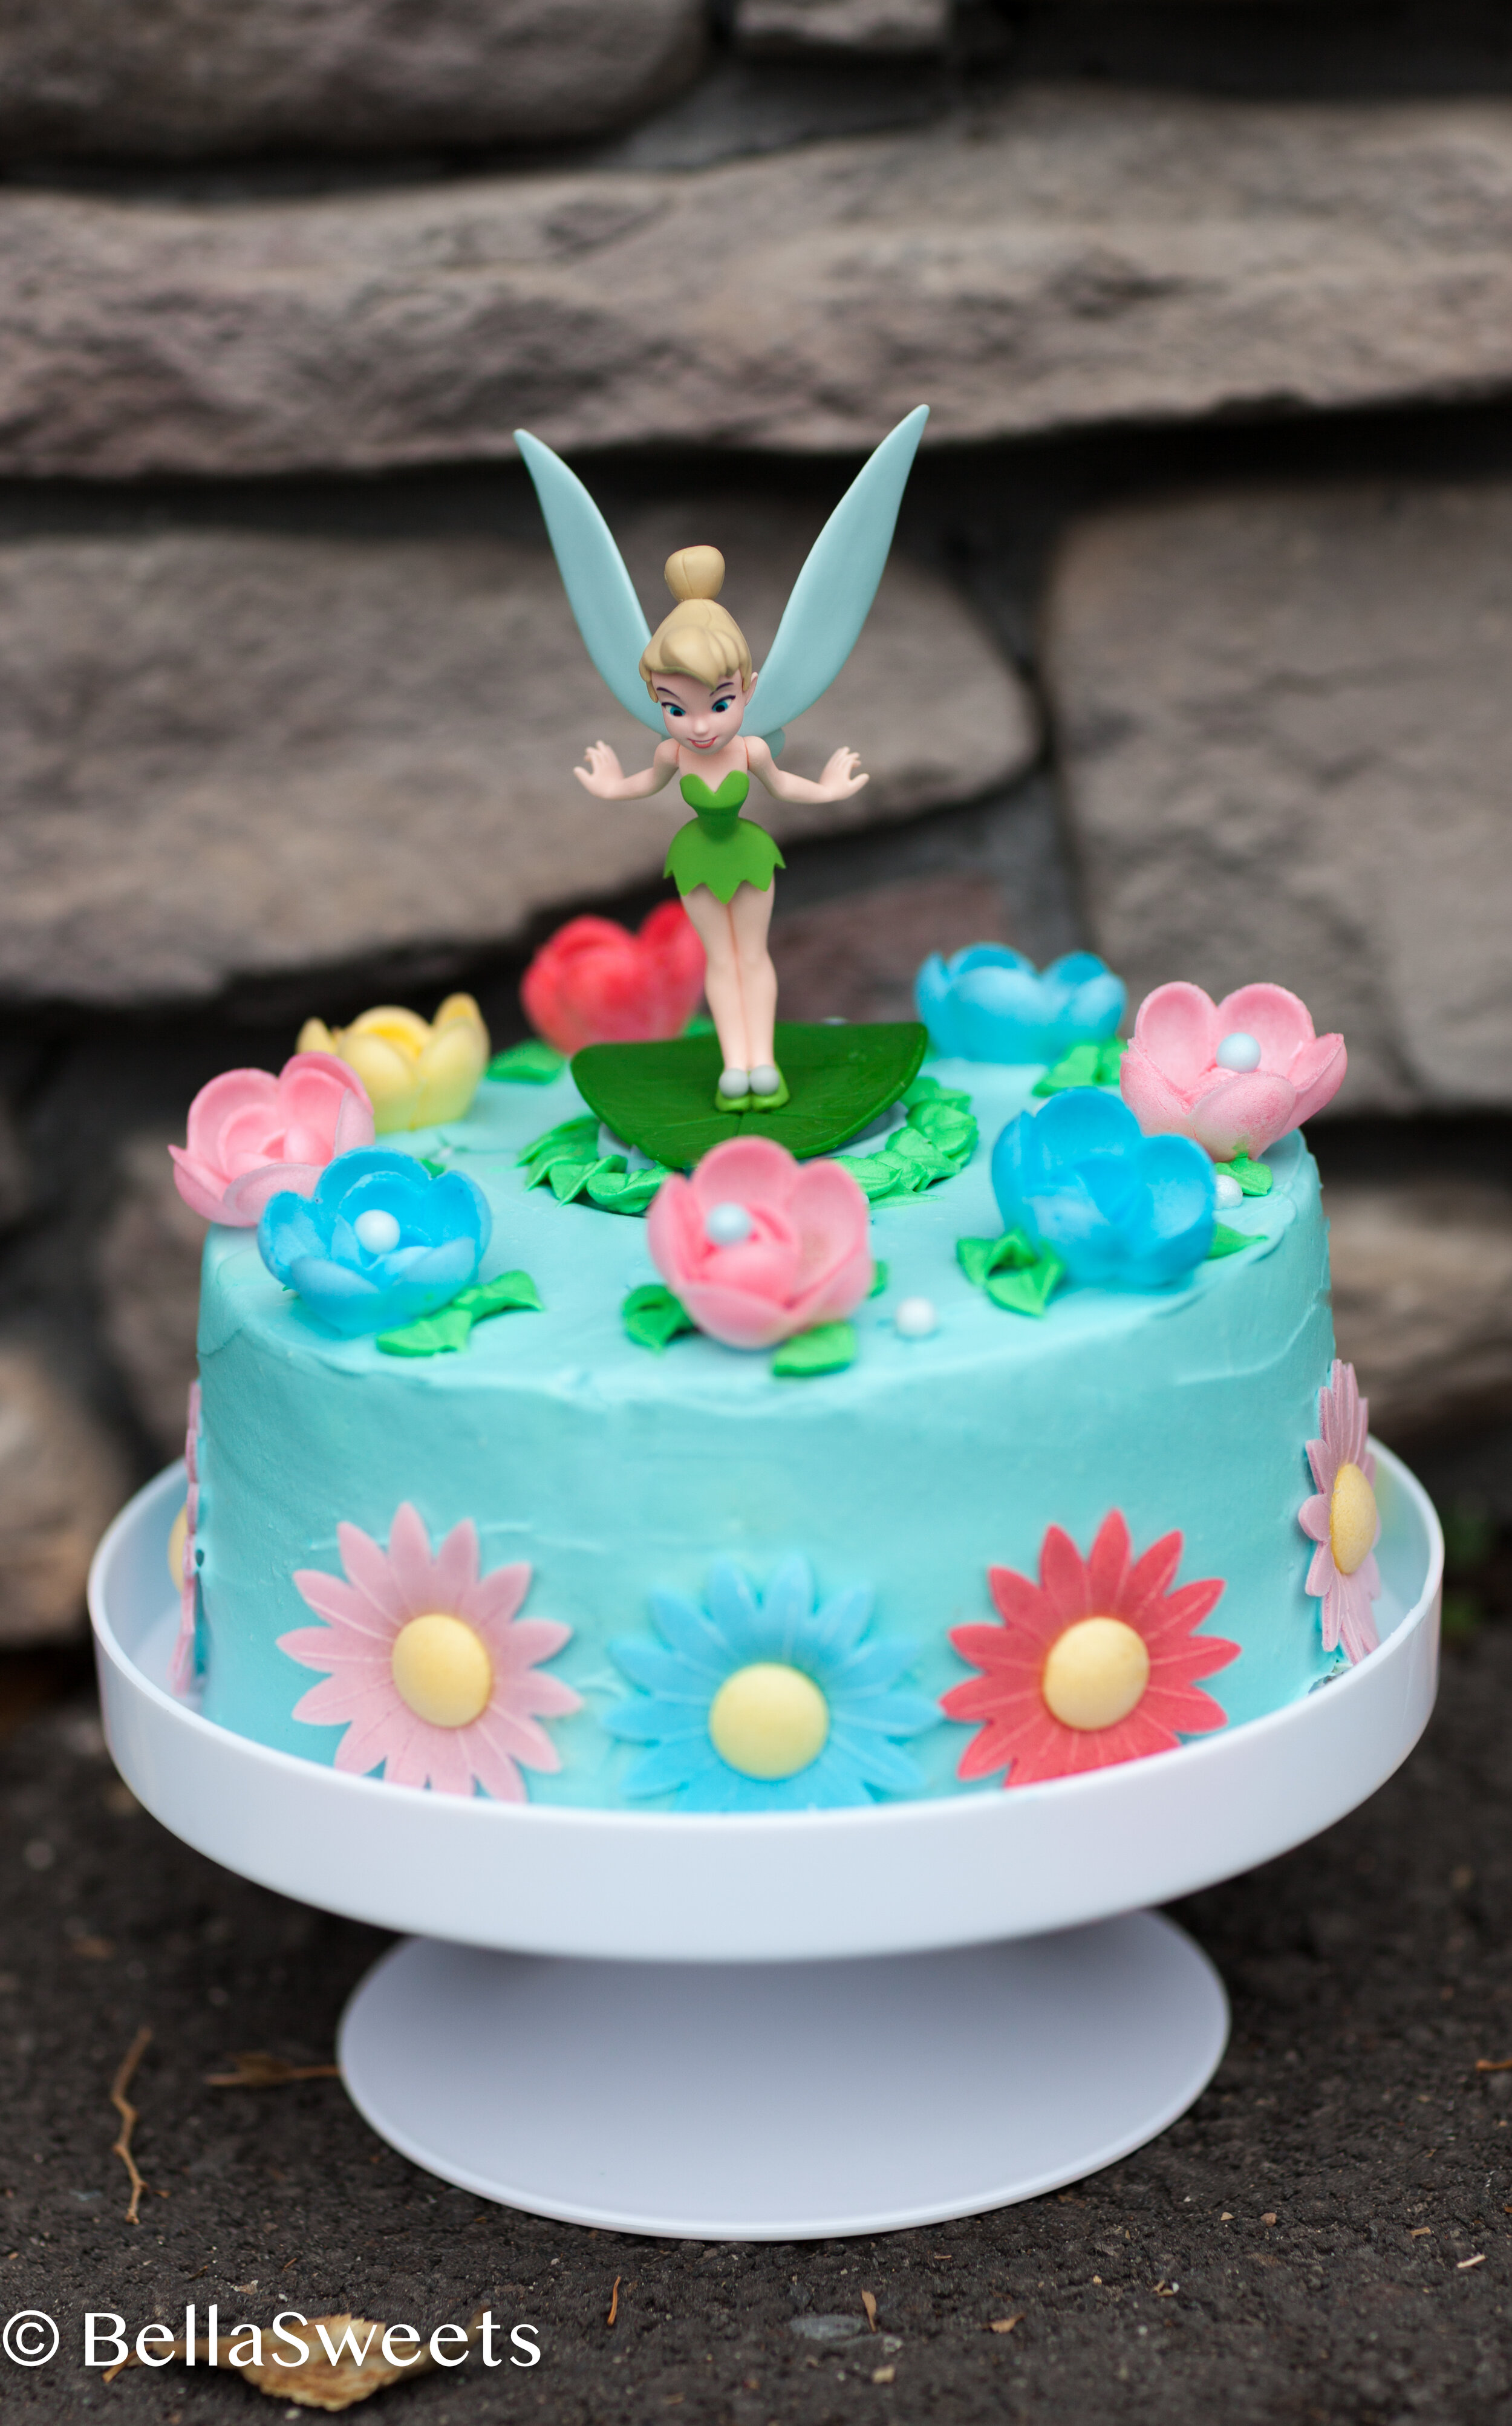 Disney Fairies Tinkerbell cake decorating kit no 1 - Kiwicakes